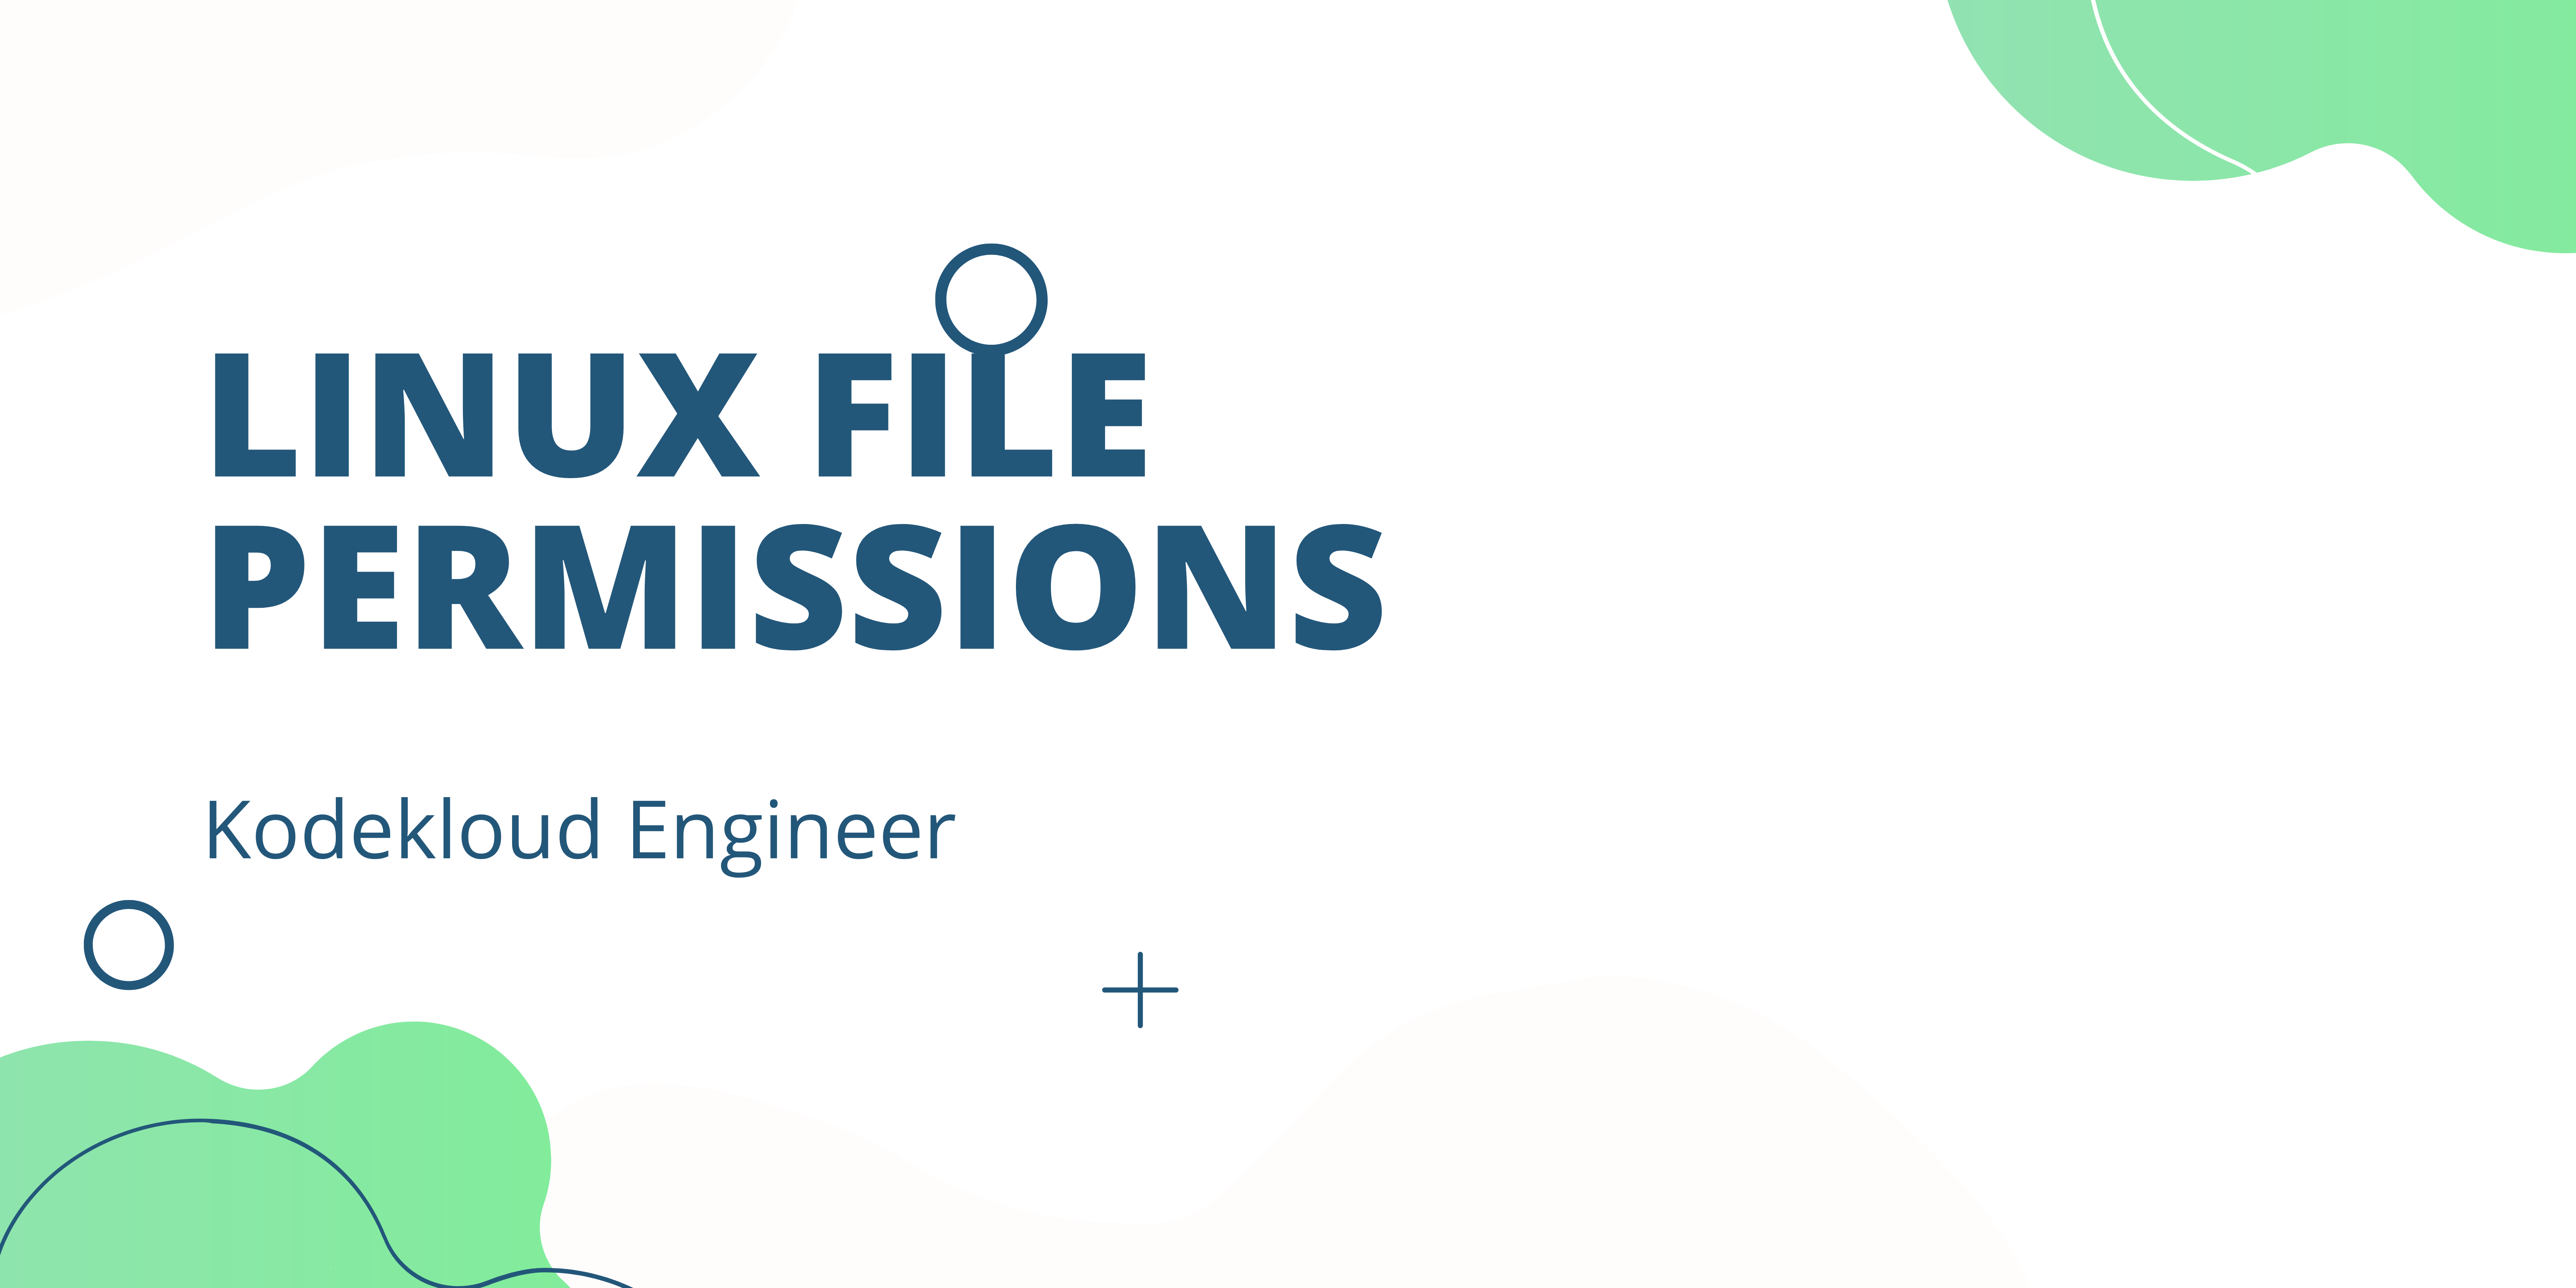 Linux file permissions - kodekloud engineer